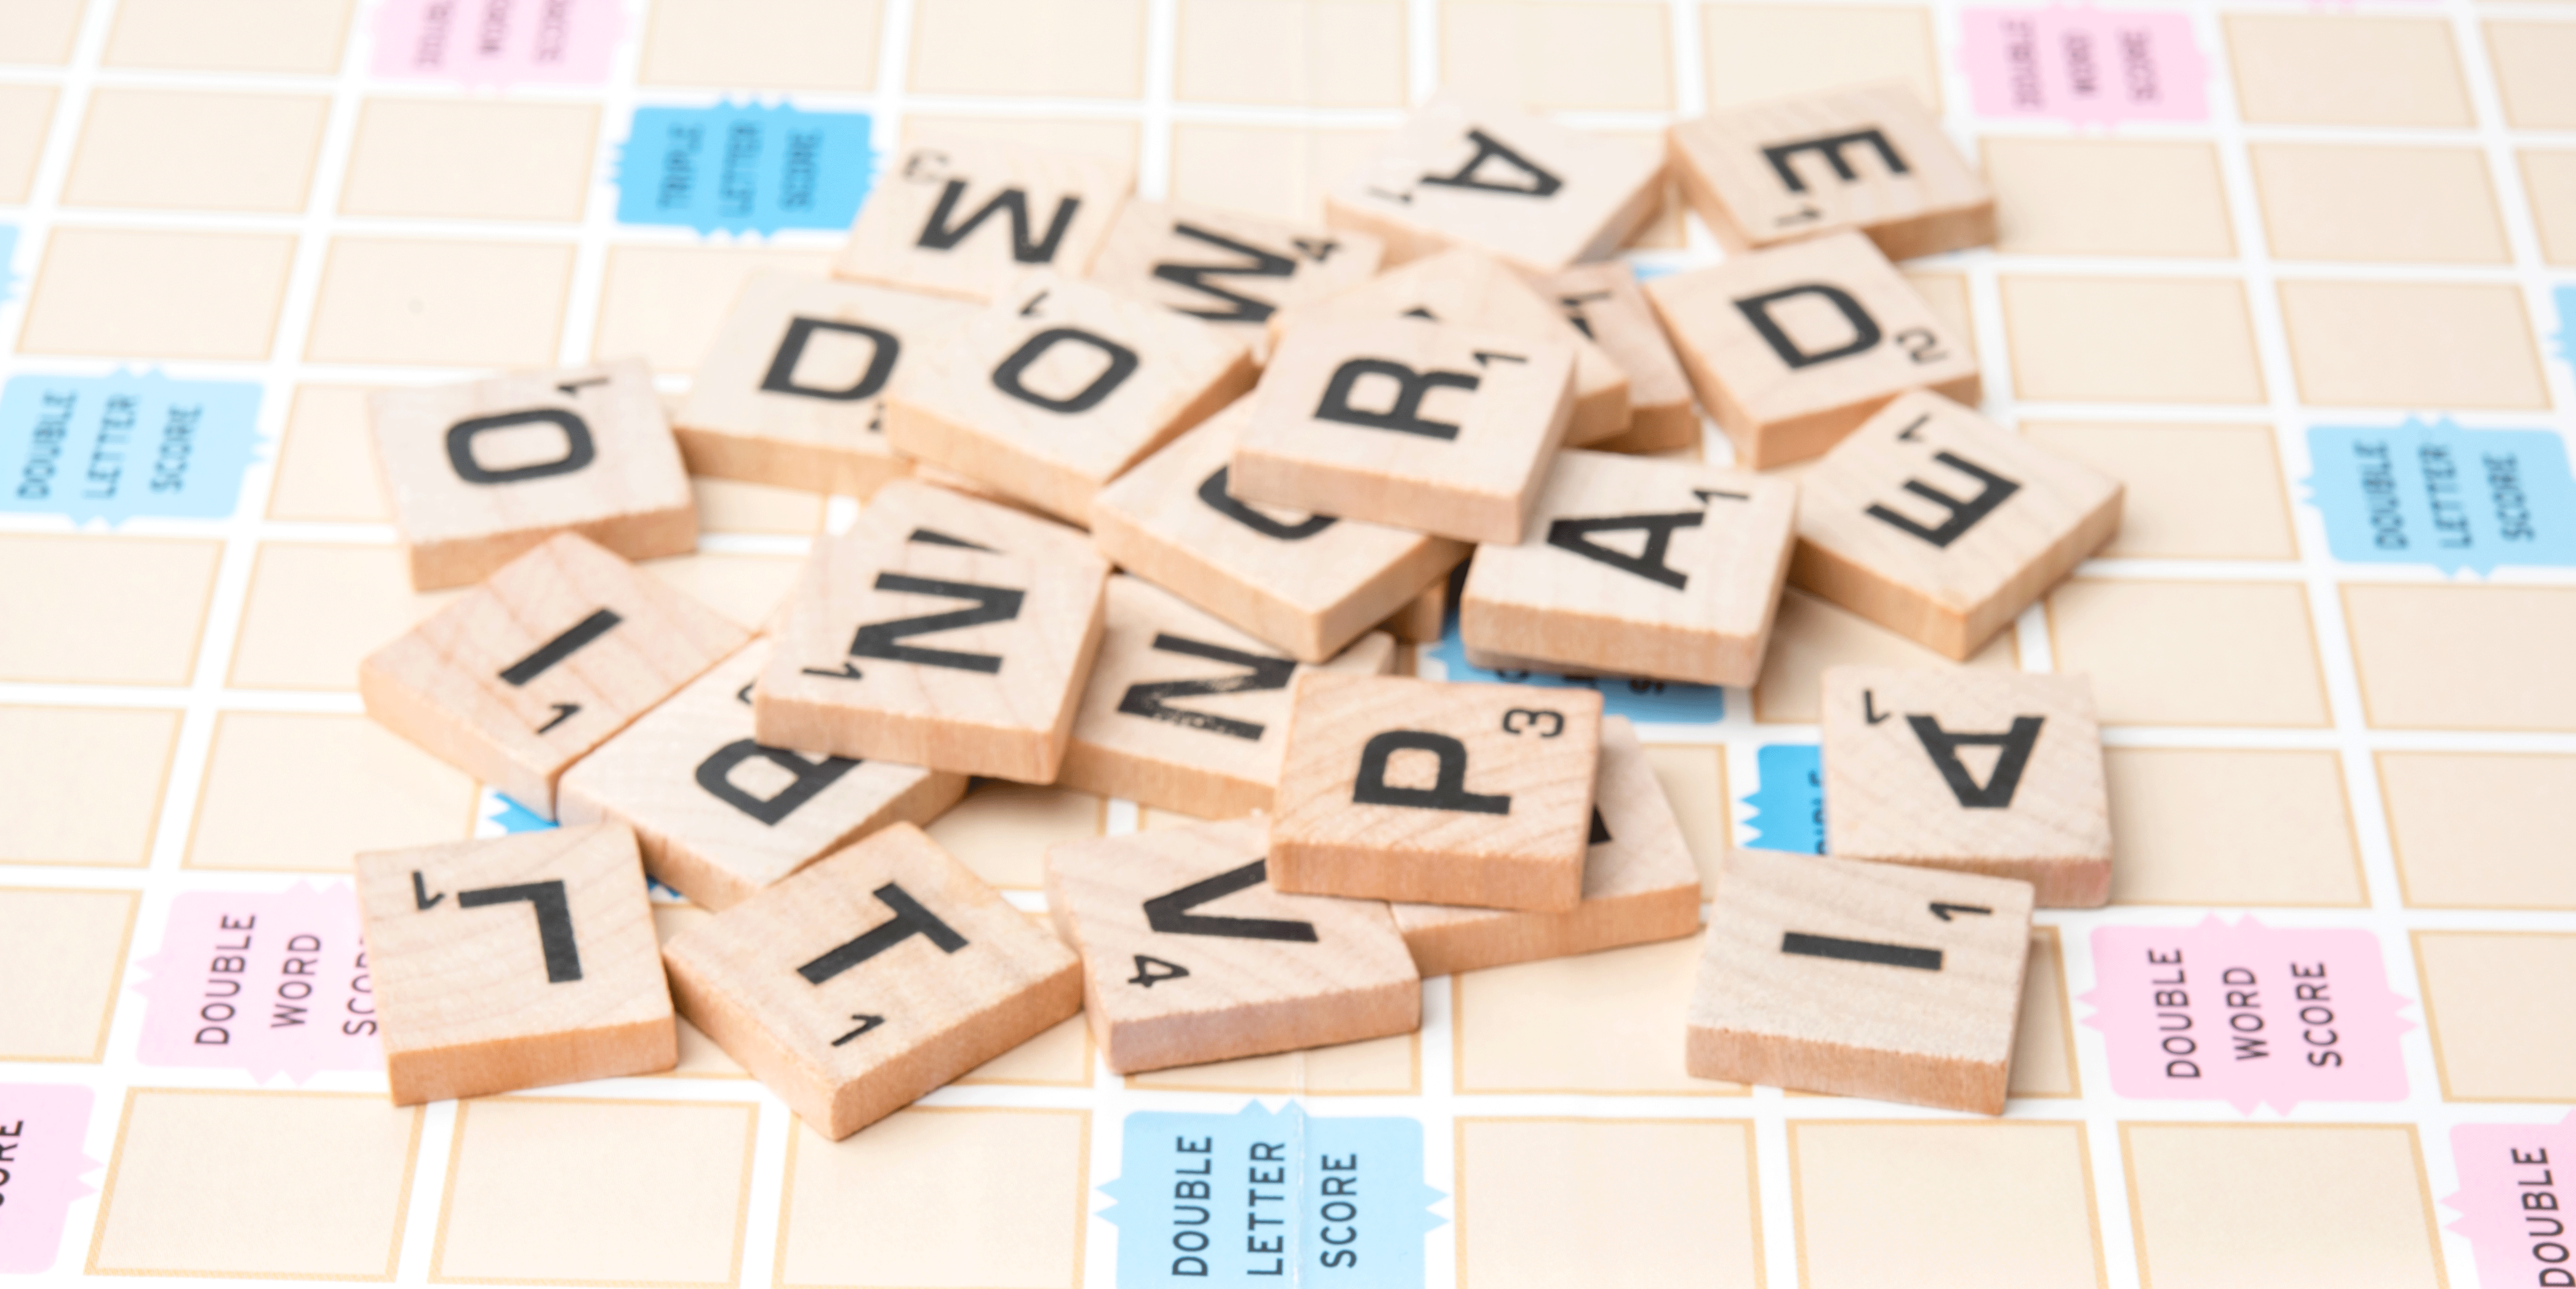 25 Best Word Board Games 2020 - Top Word Board Games We Love